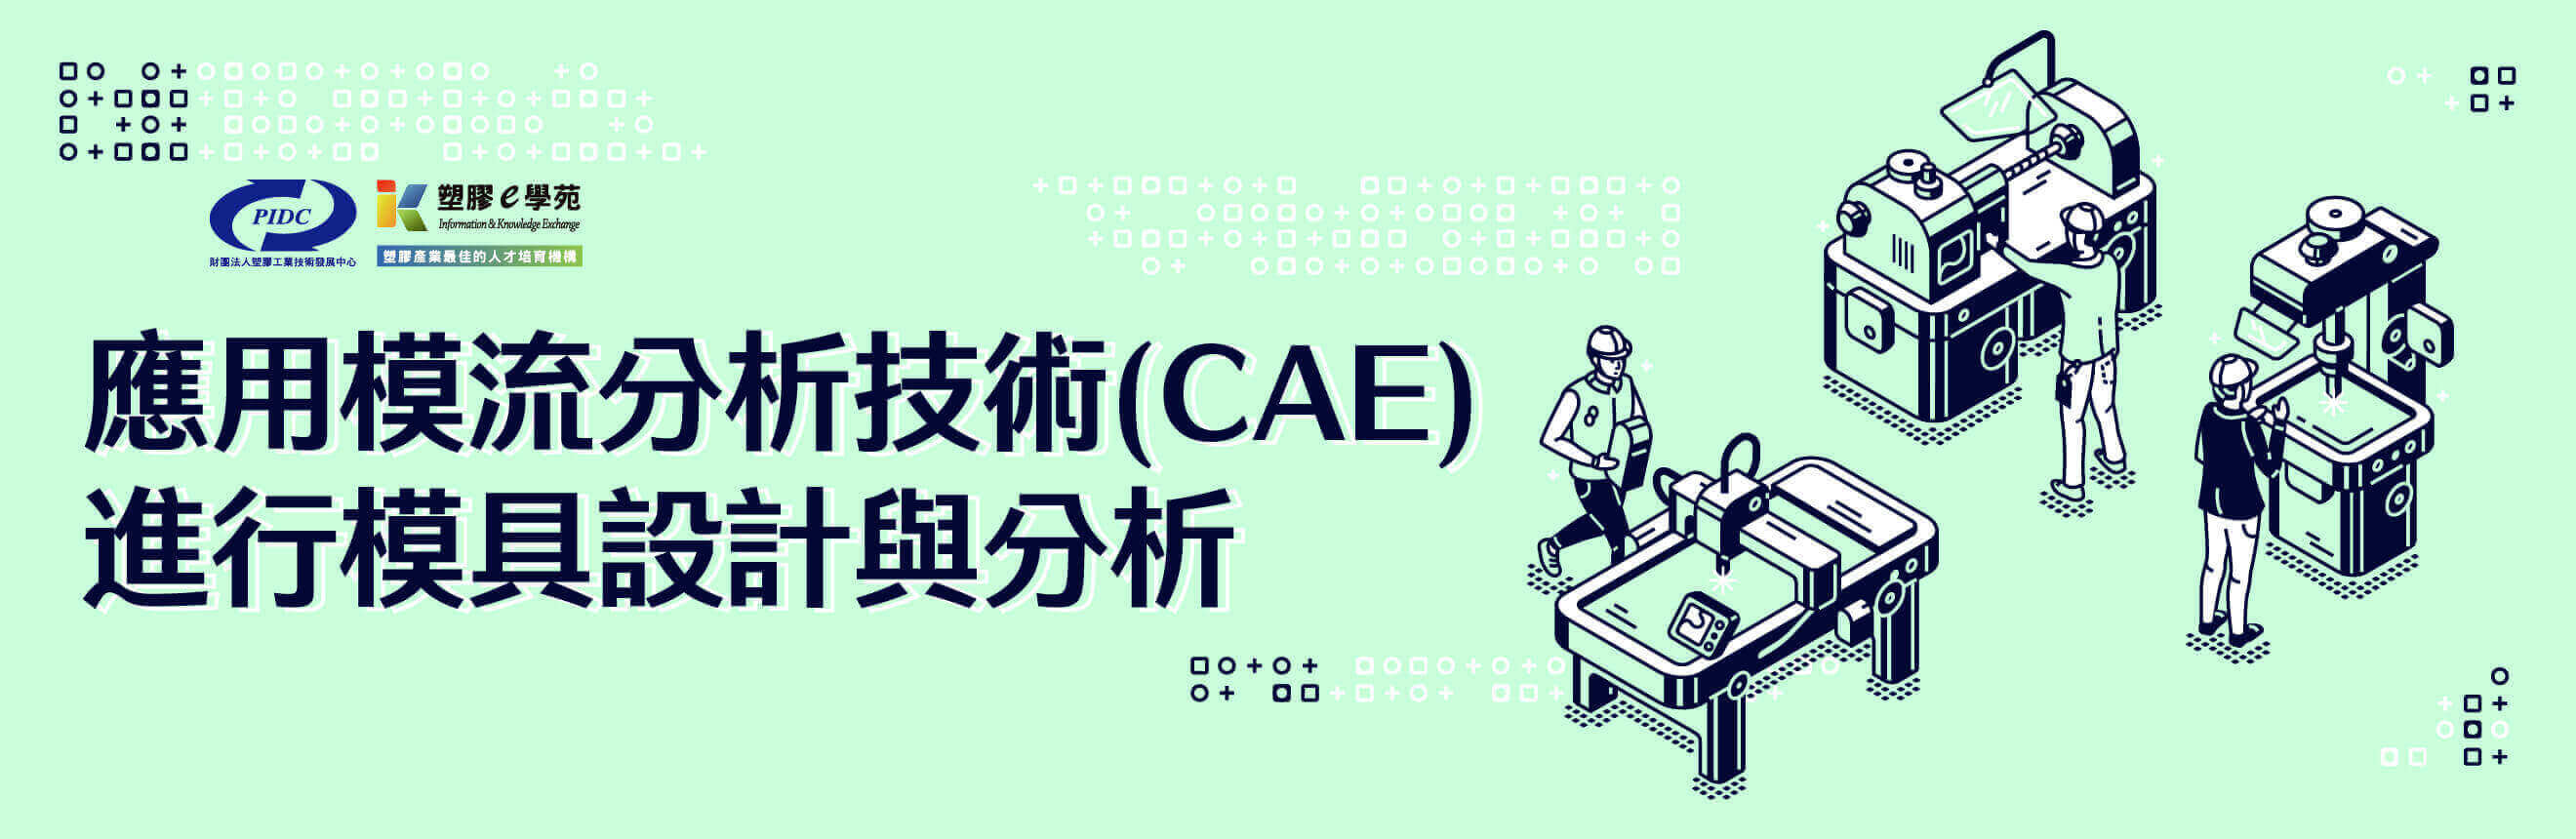 應用模流分析技術(CAE)進行模具設計與分析